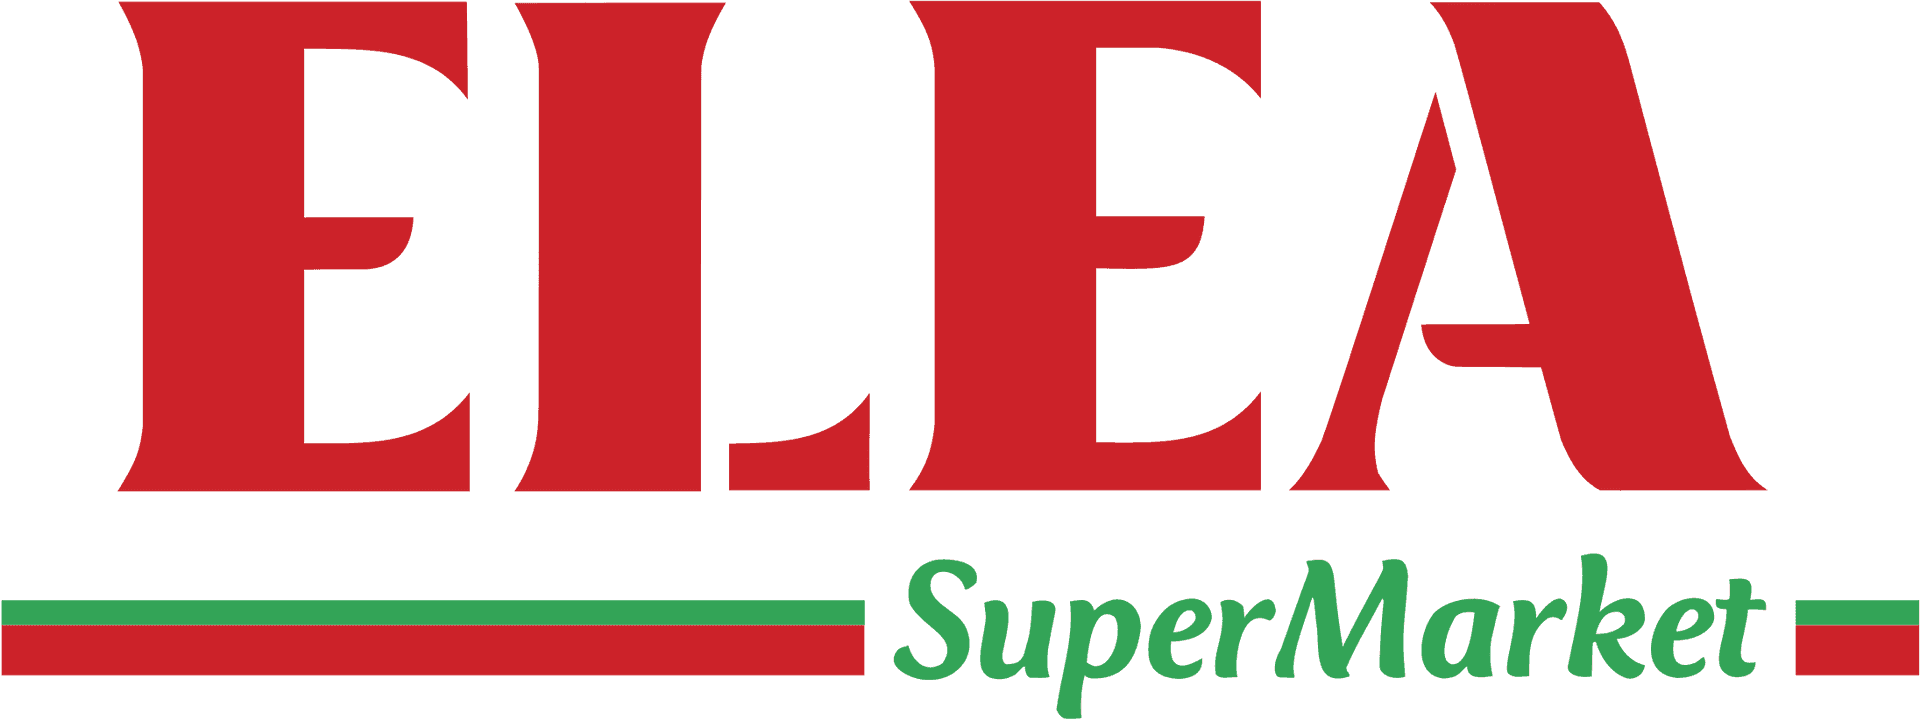 Elea Supermarket Logo PNG